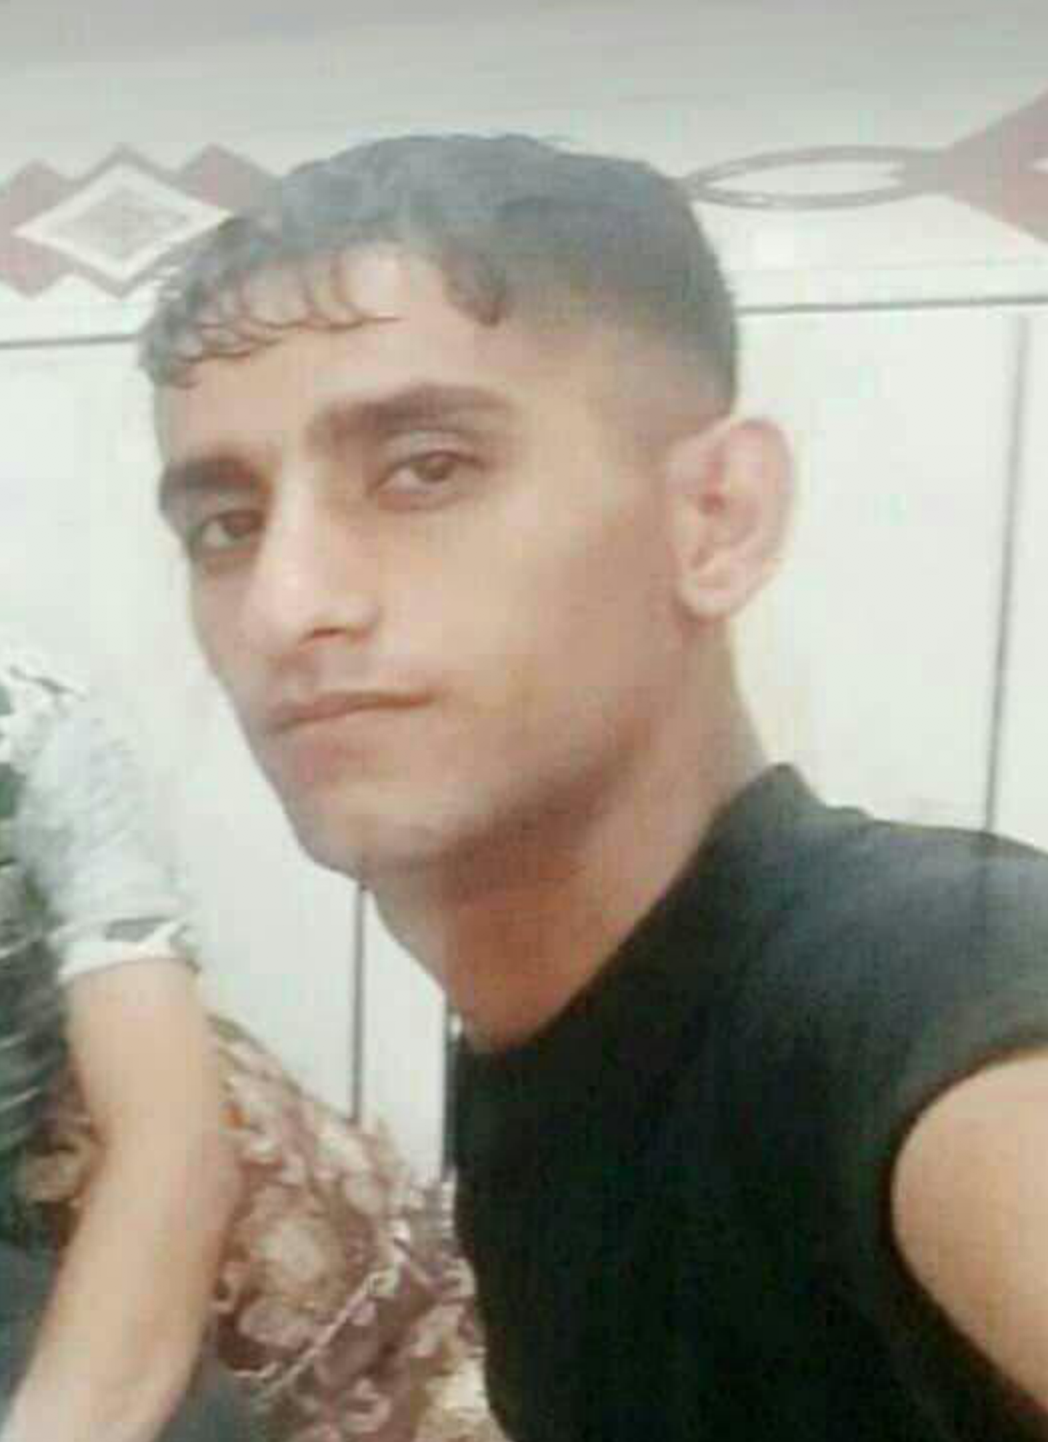 جنایتی دیگر: جسد محمد شریفی که دلیل به آتش زدن بنر خامنه ای تحت تعقیب اطلاعات رژیم بود پیدا شد